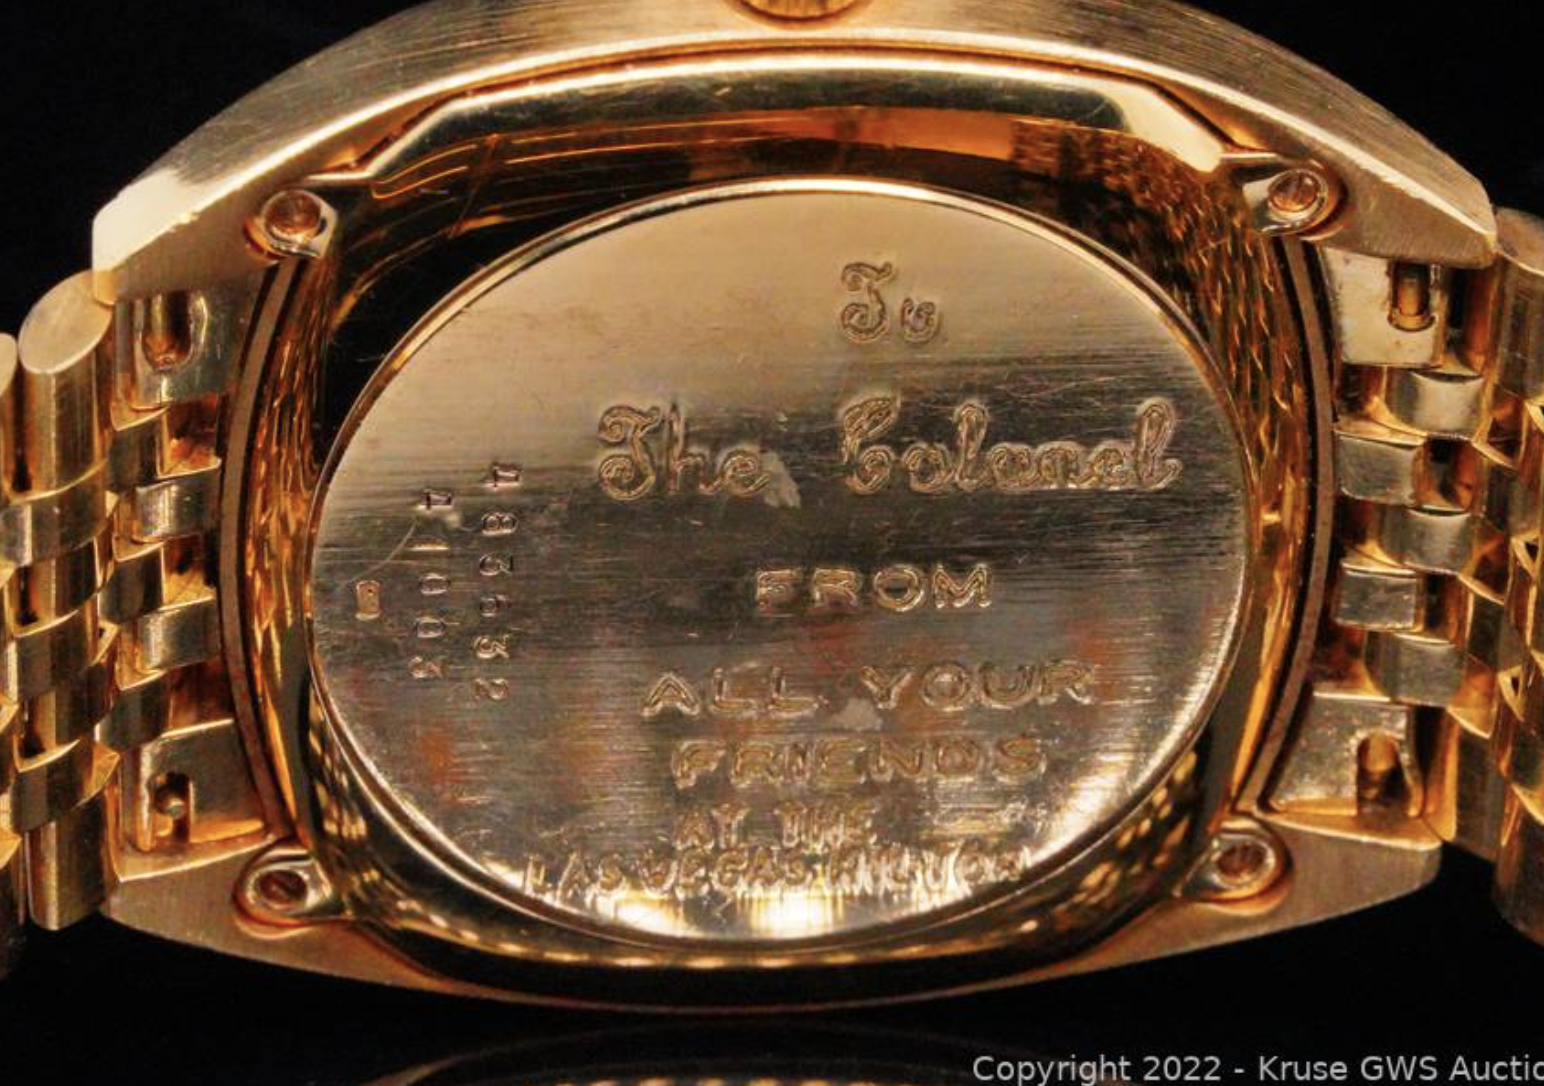 La inscripción del reloj Baume & Mercier del Coronel Tom Parker